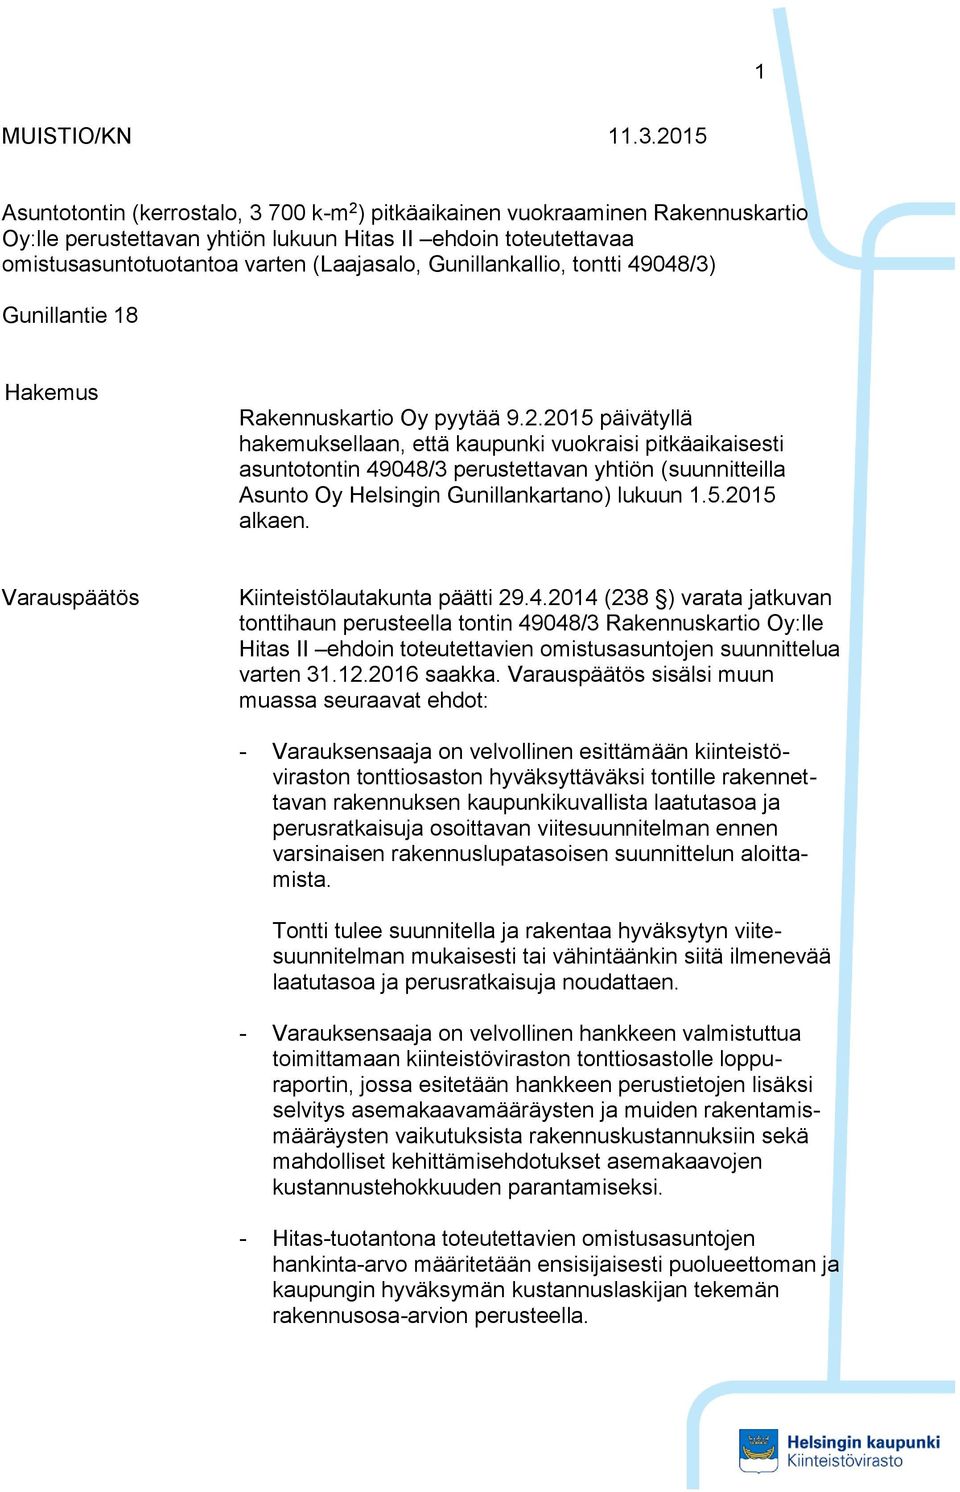 Gunillankallio, tontti 49048/3) Gunillantie 18 Hakemus Rakennuskartio Oy pyytää 9.2.